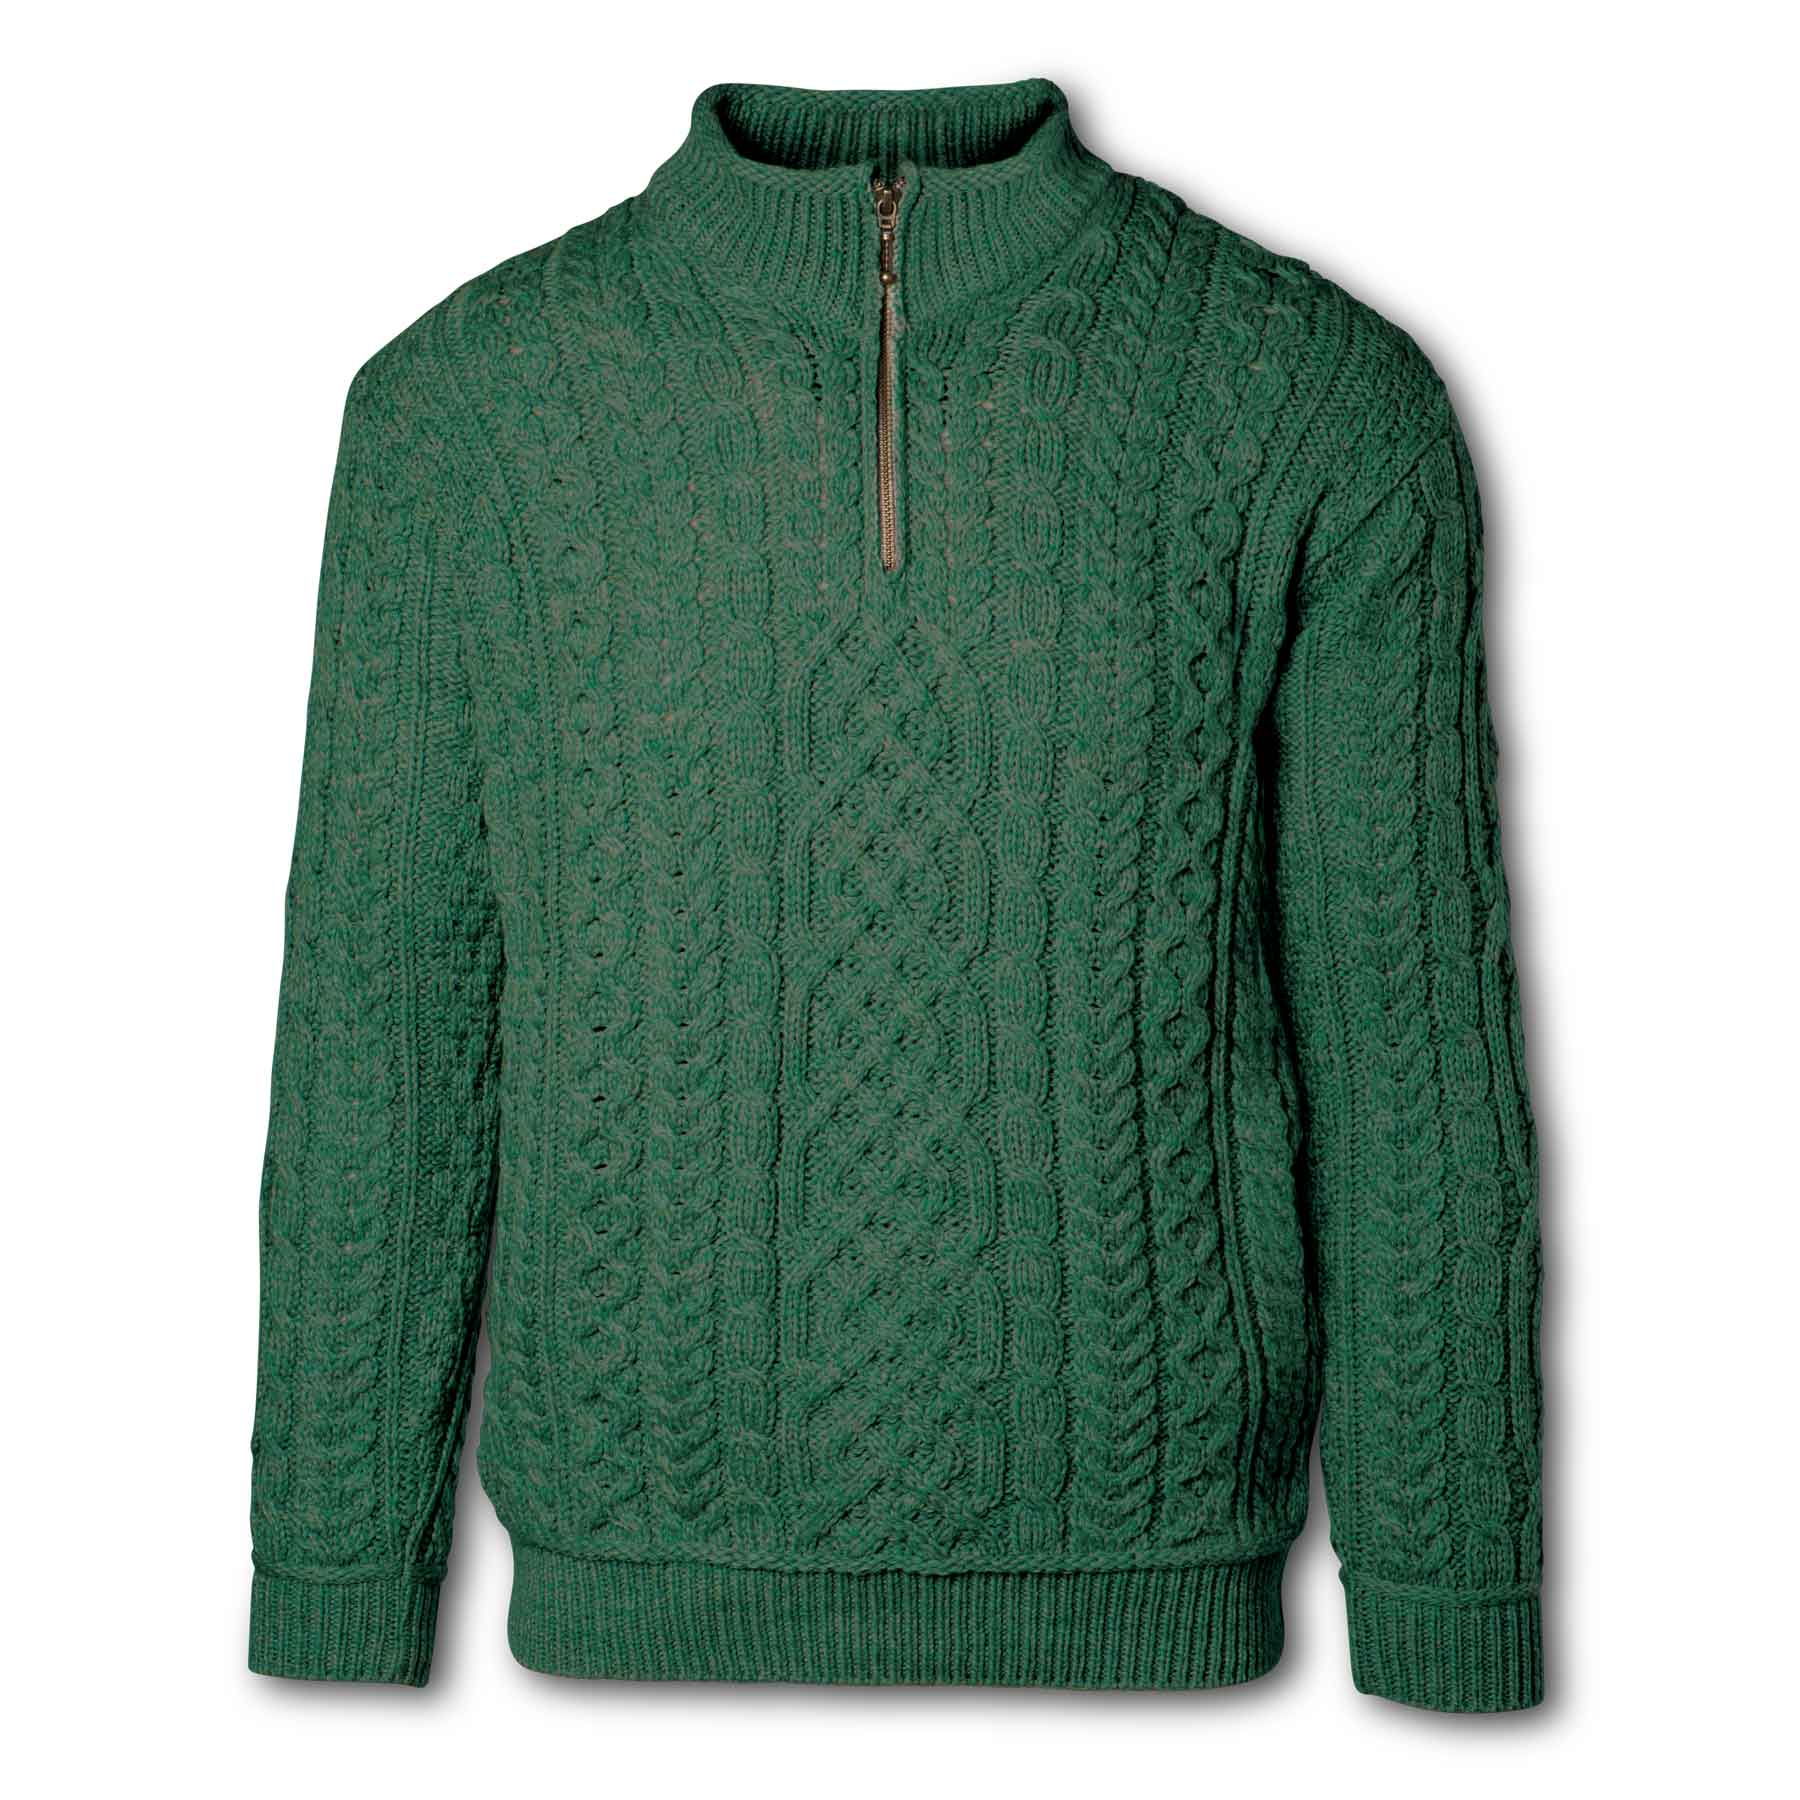 Quarter Zip Irish Aran Knit Sweater- Green